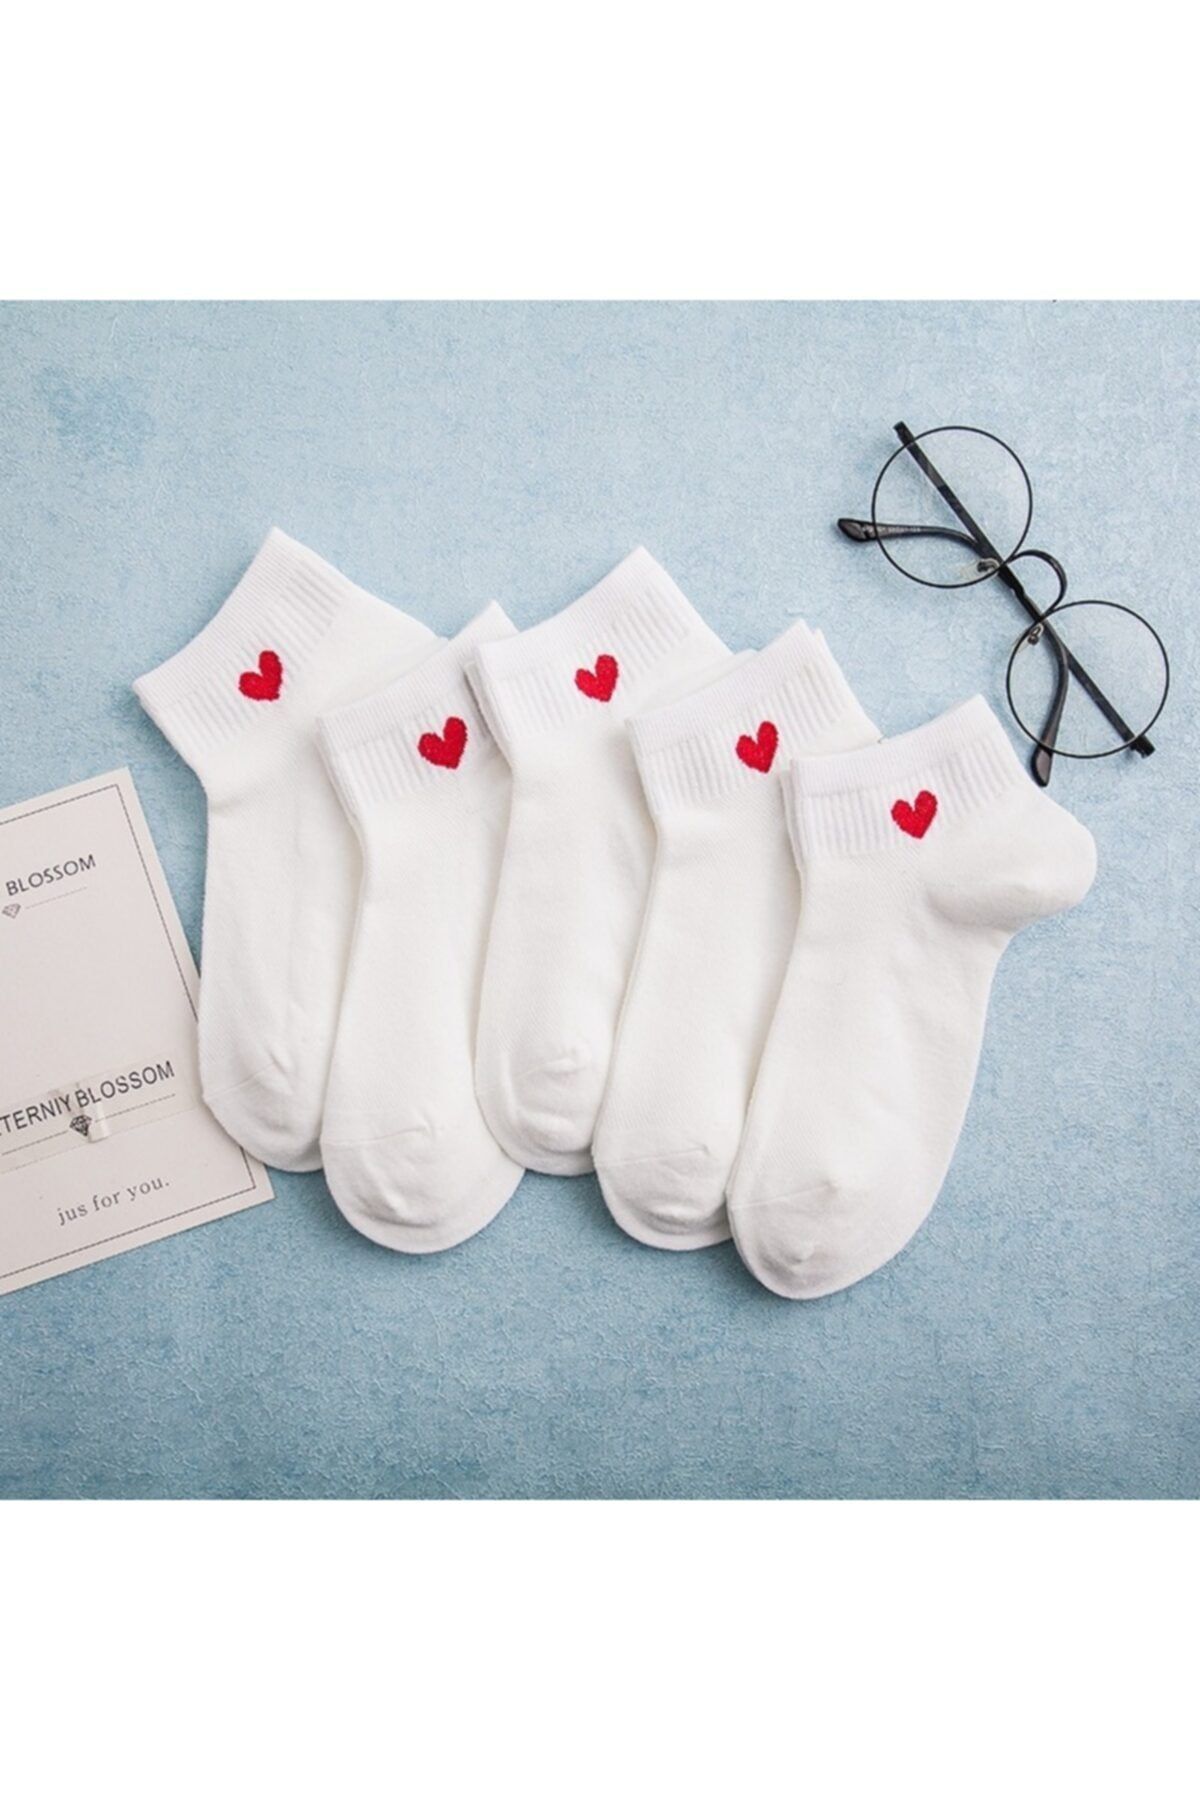 çorapmanya 5 Çift Beyaz Kalp Desenli Yarım Konç Kadın Çorap